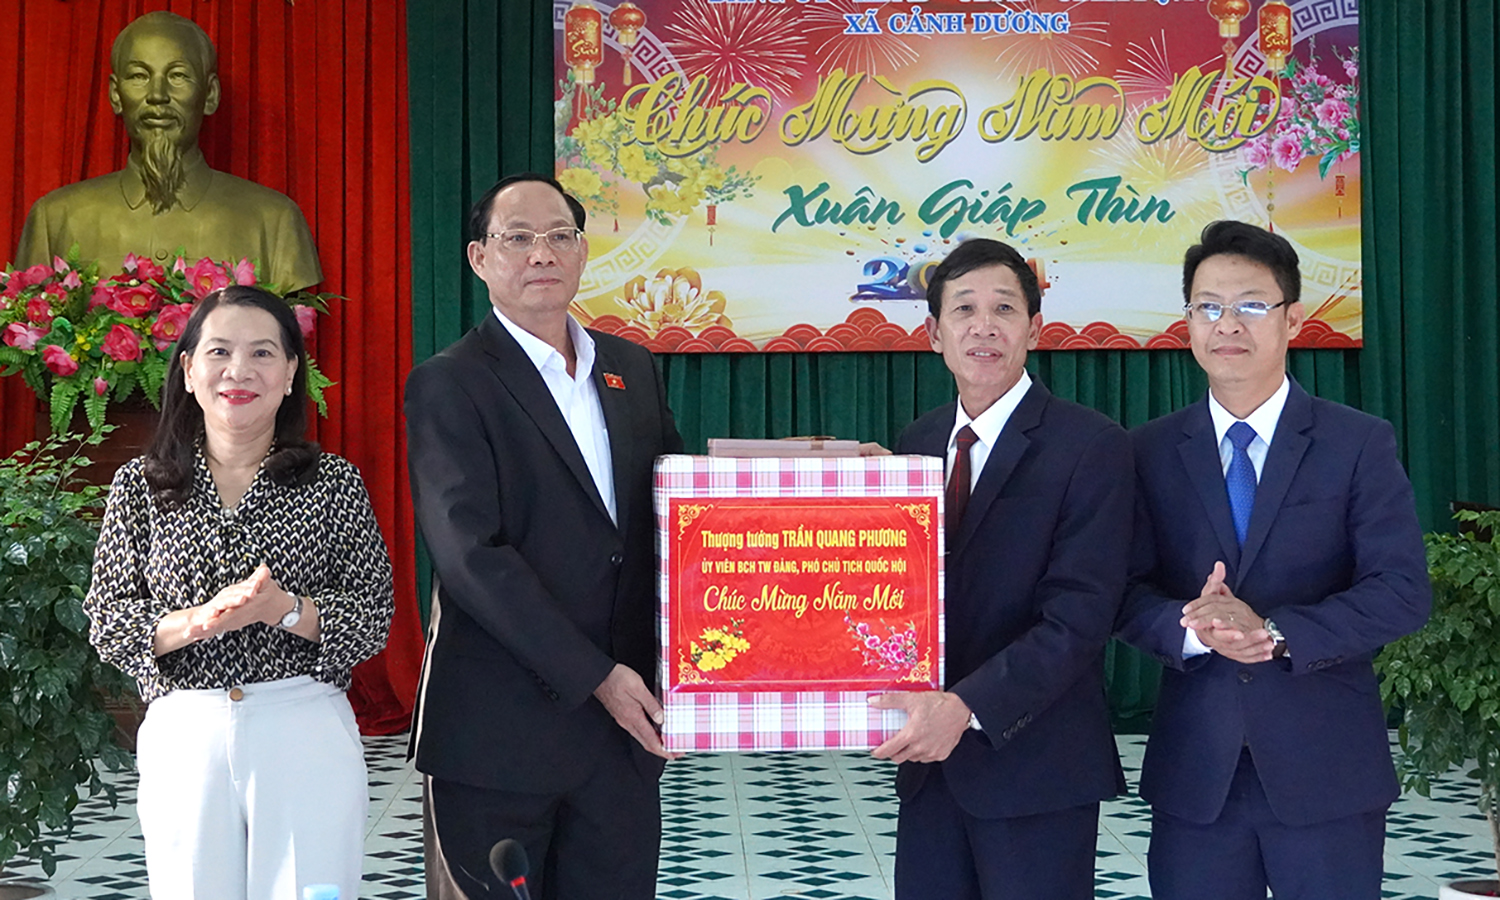 Phó Chủ tịch Quốc hội Trần Quang Phương thăm và chúc Tết tại huyện Quảng Trạch